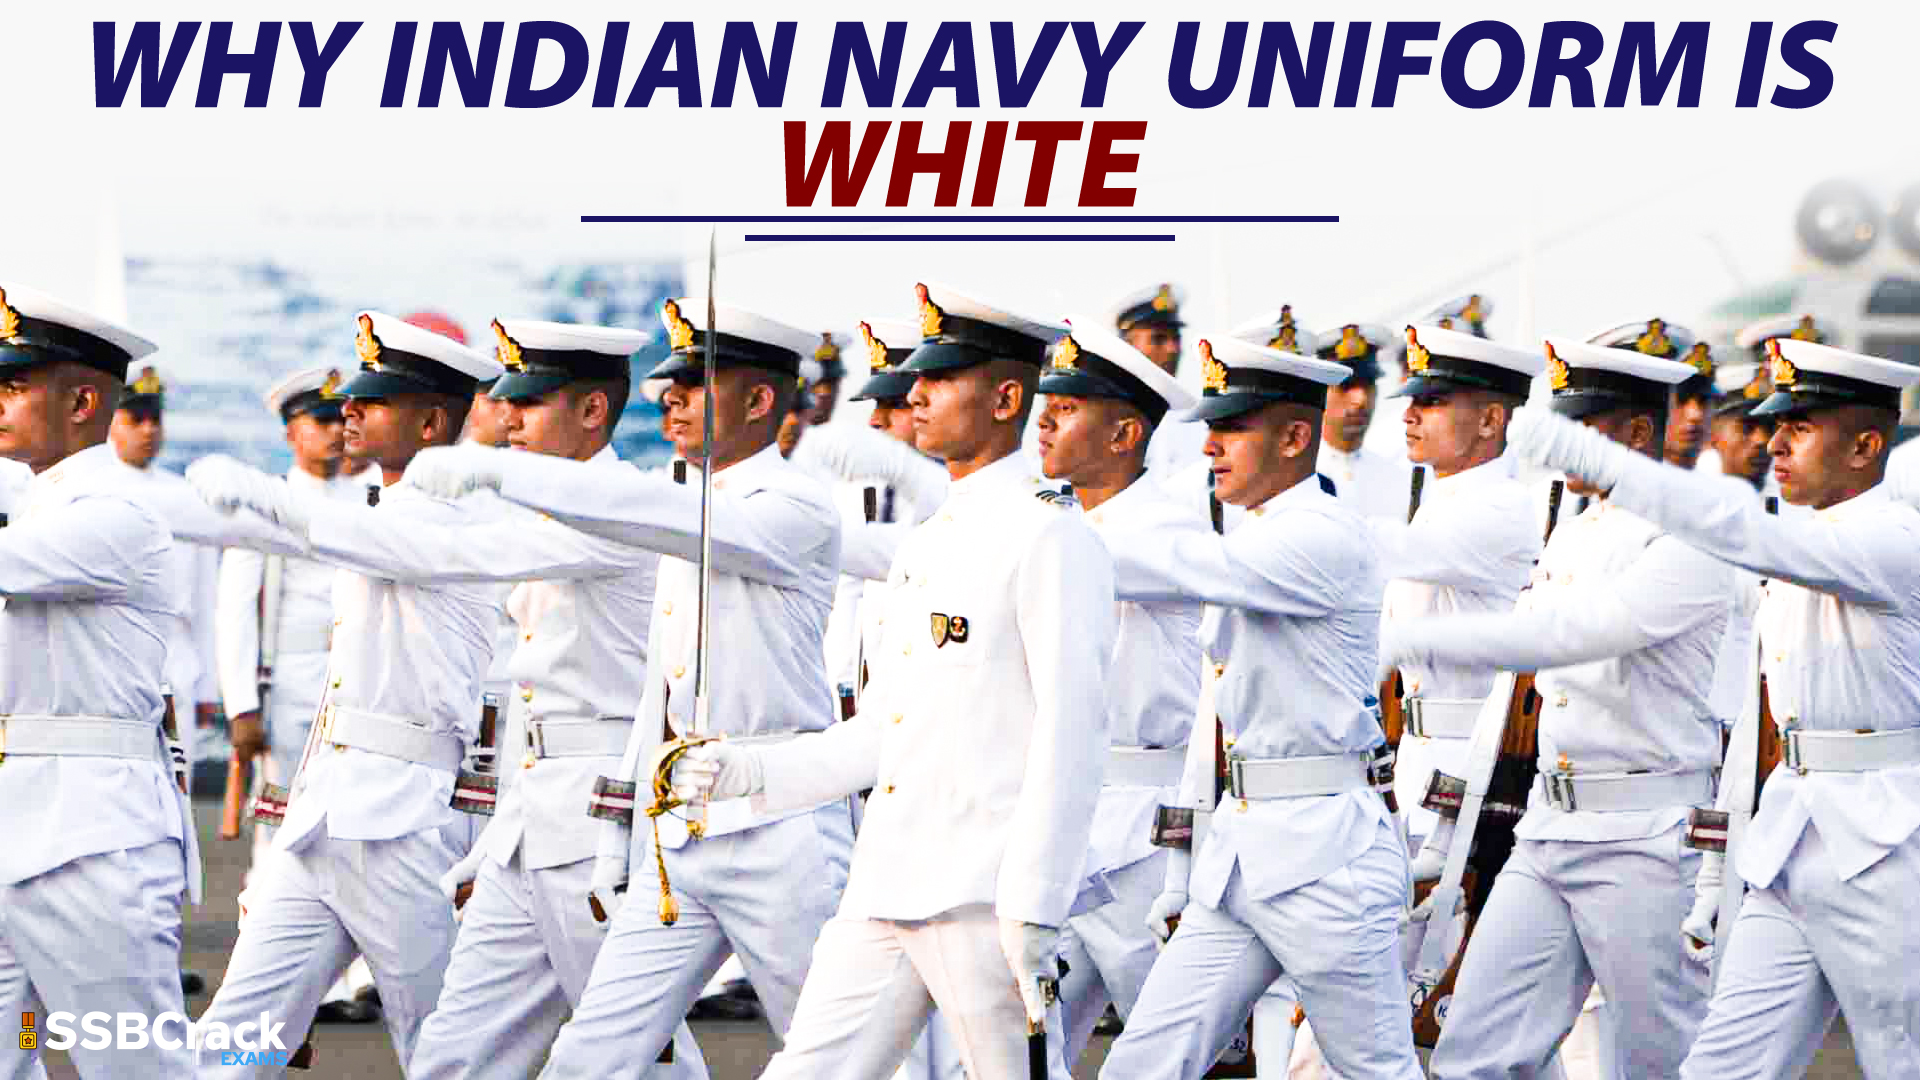 Kaku Fancy Dresses Our Helper/National Hero Indian Navy Costume - White,  for Boys & Girls Clothing